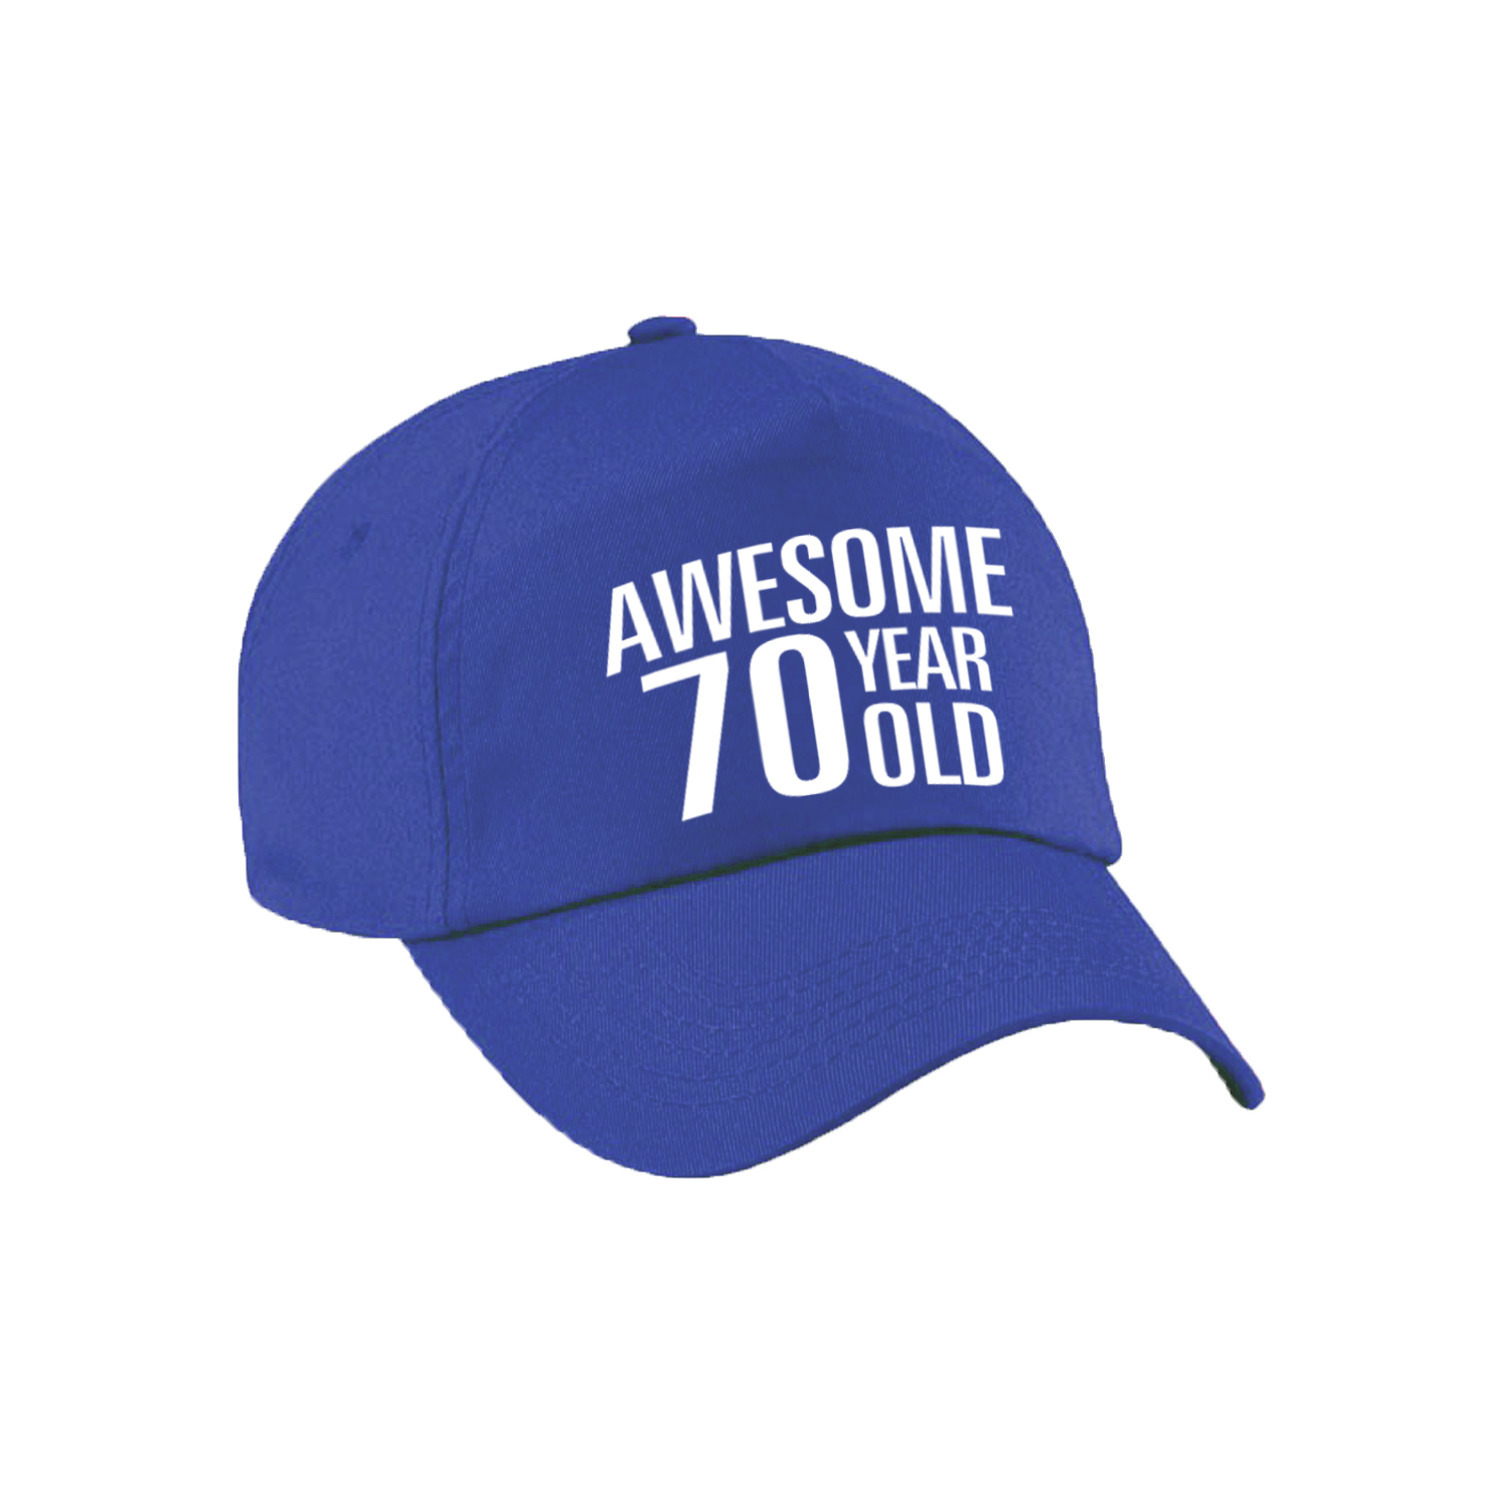 Awesome 70 year old verjaardag pet / cap blauw voor dames en heren